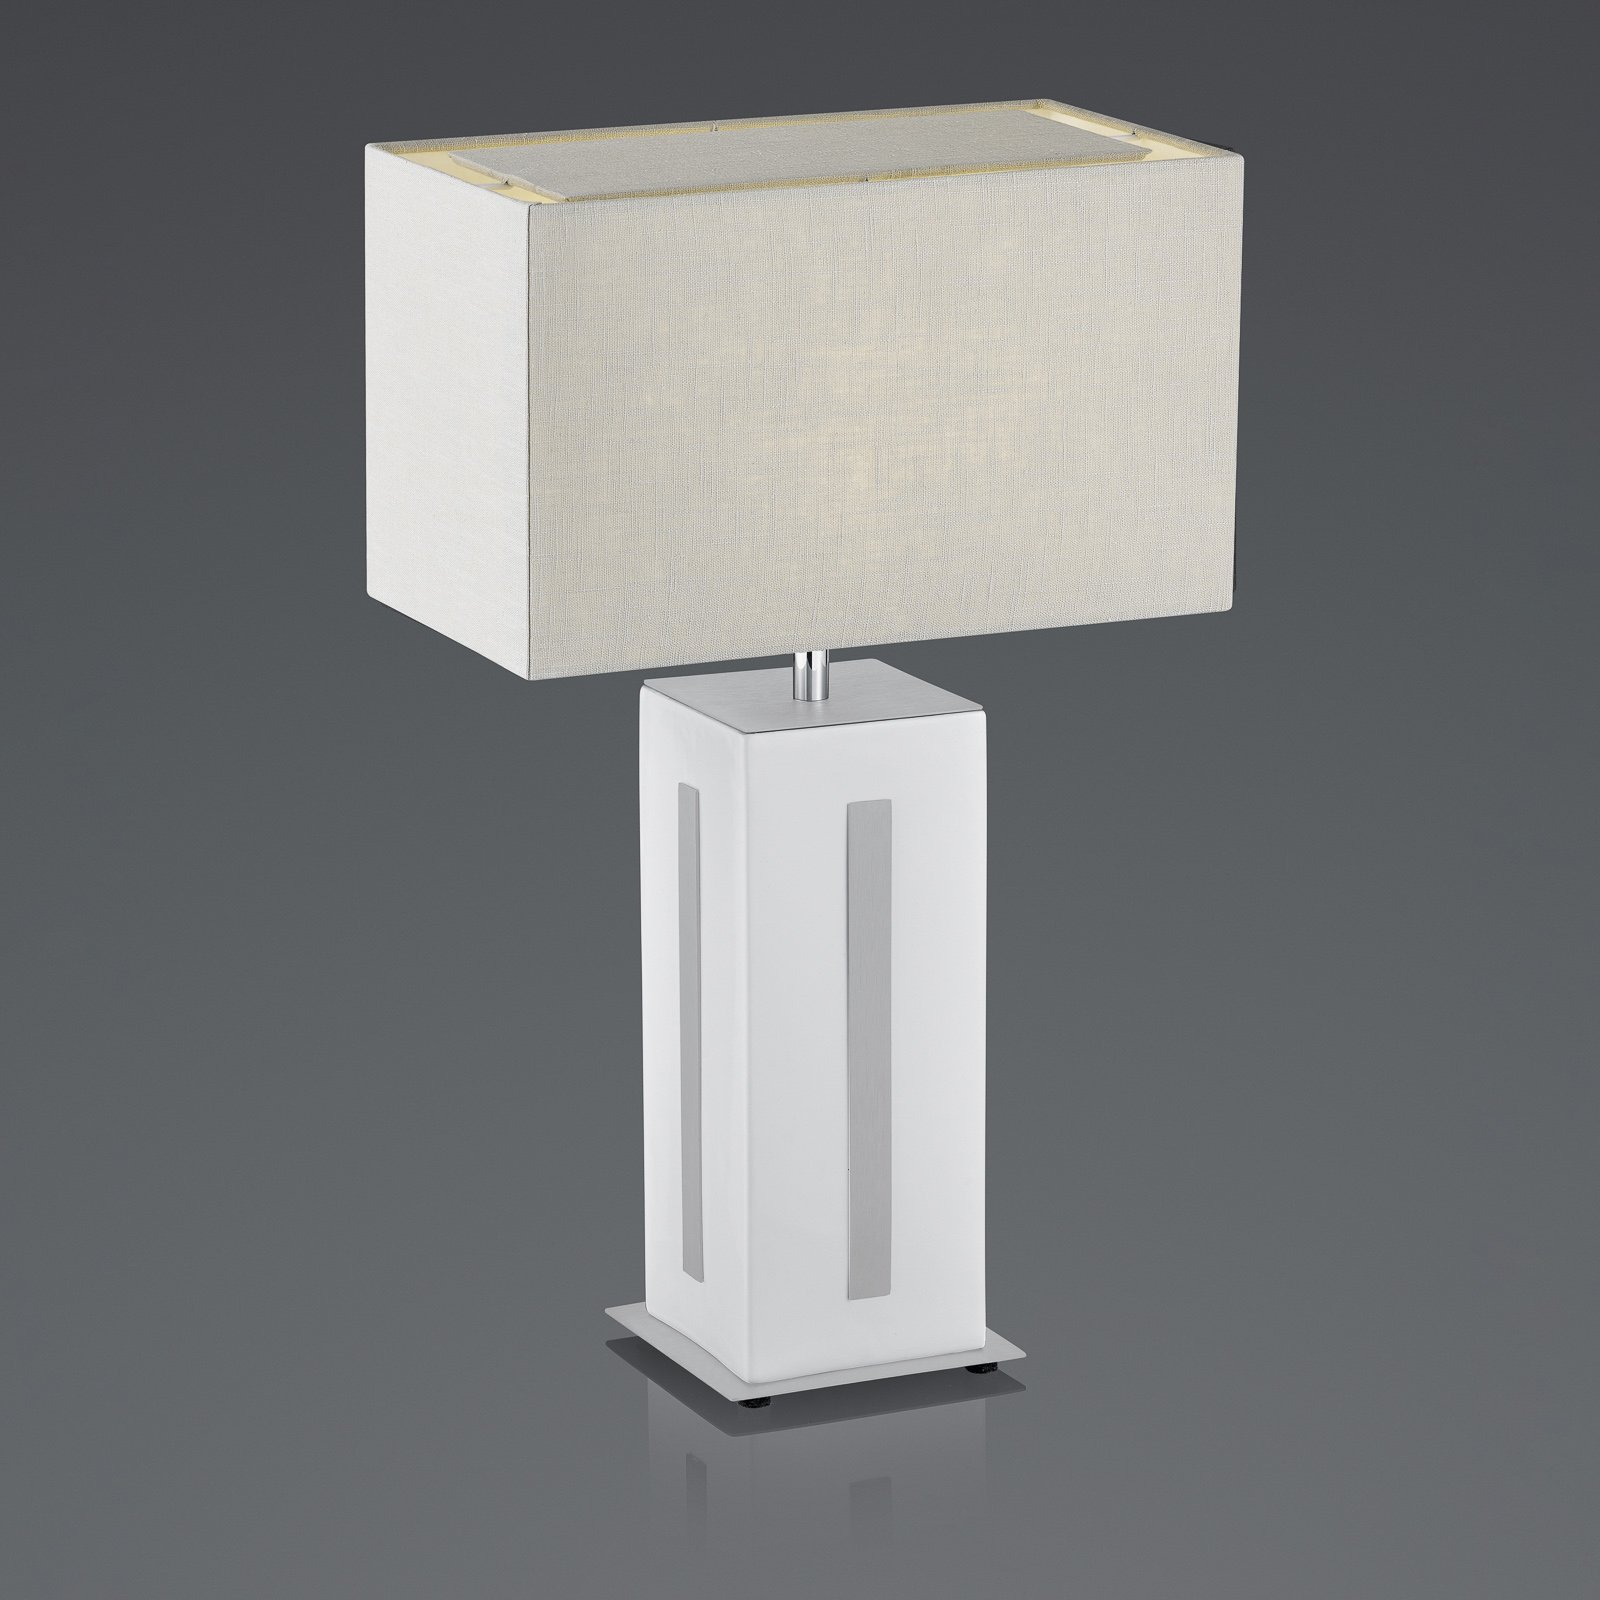 BANKAMP Karlo bordslampa vit/grå, höjd 56 cm